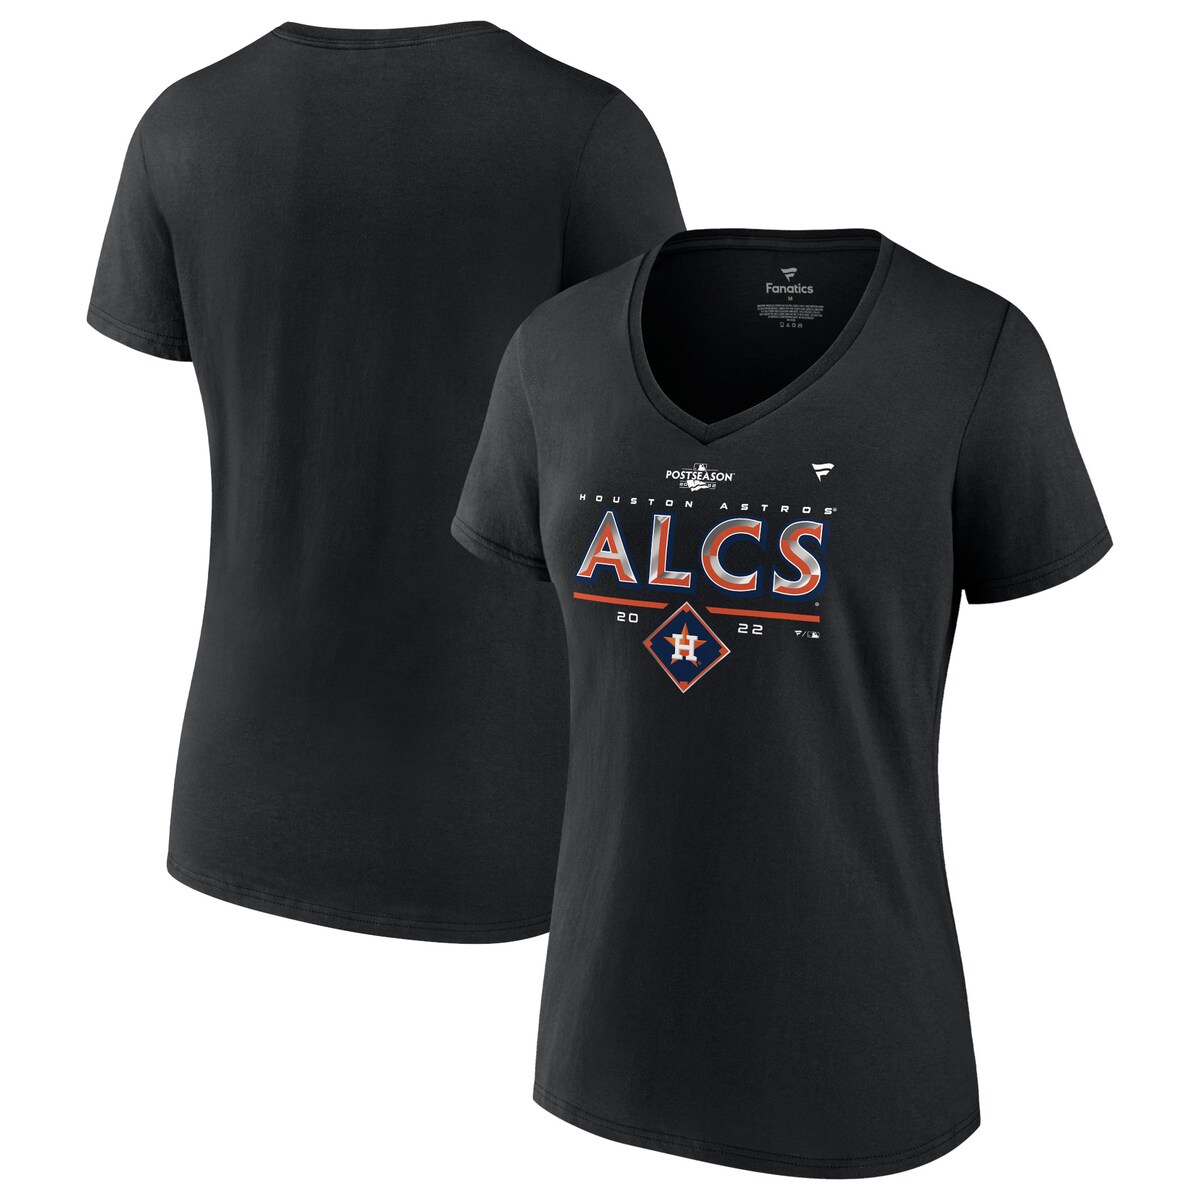 MLB アストロズ Tシャツ Fanatics（ファナティクス） レディース ブラック (Women´s Plus 22 DSP LR SS Tee)